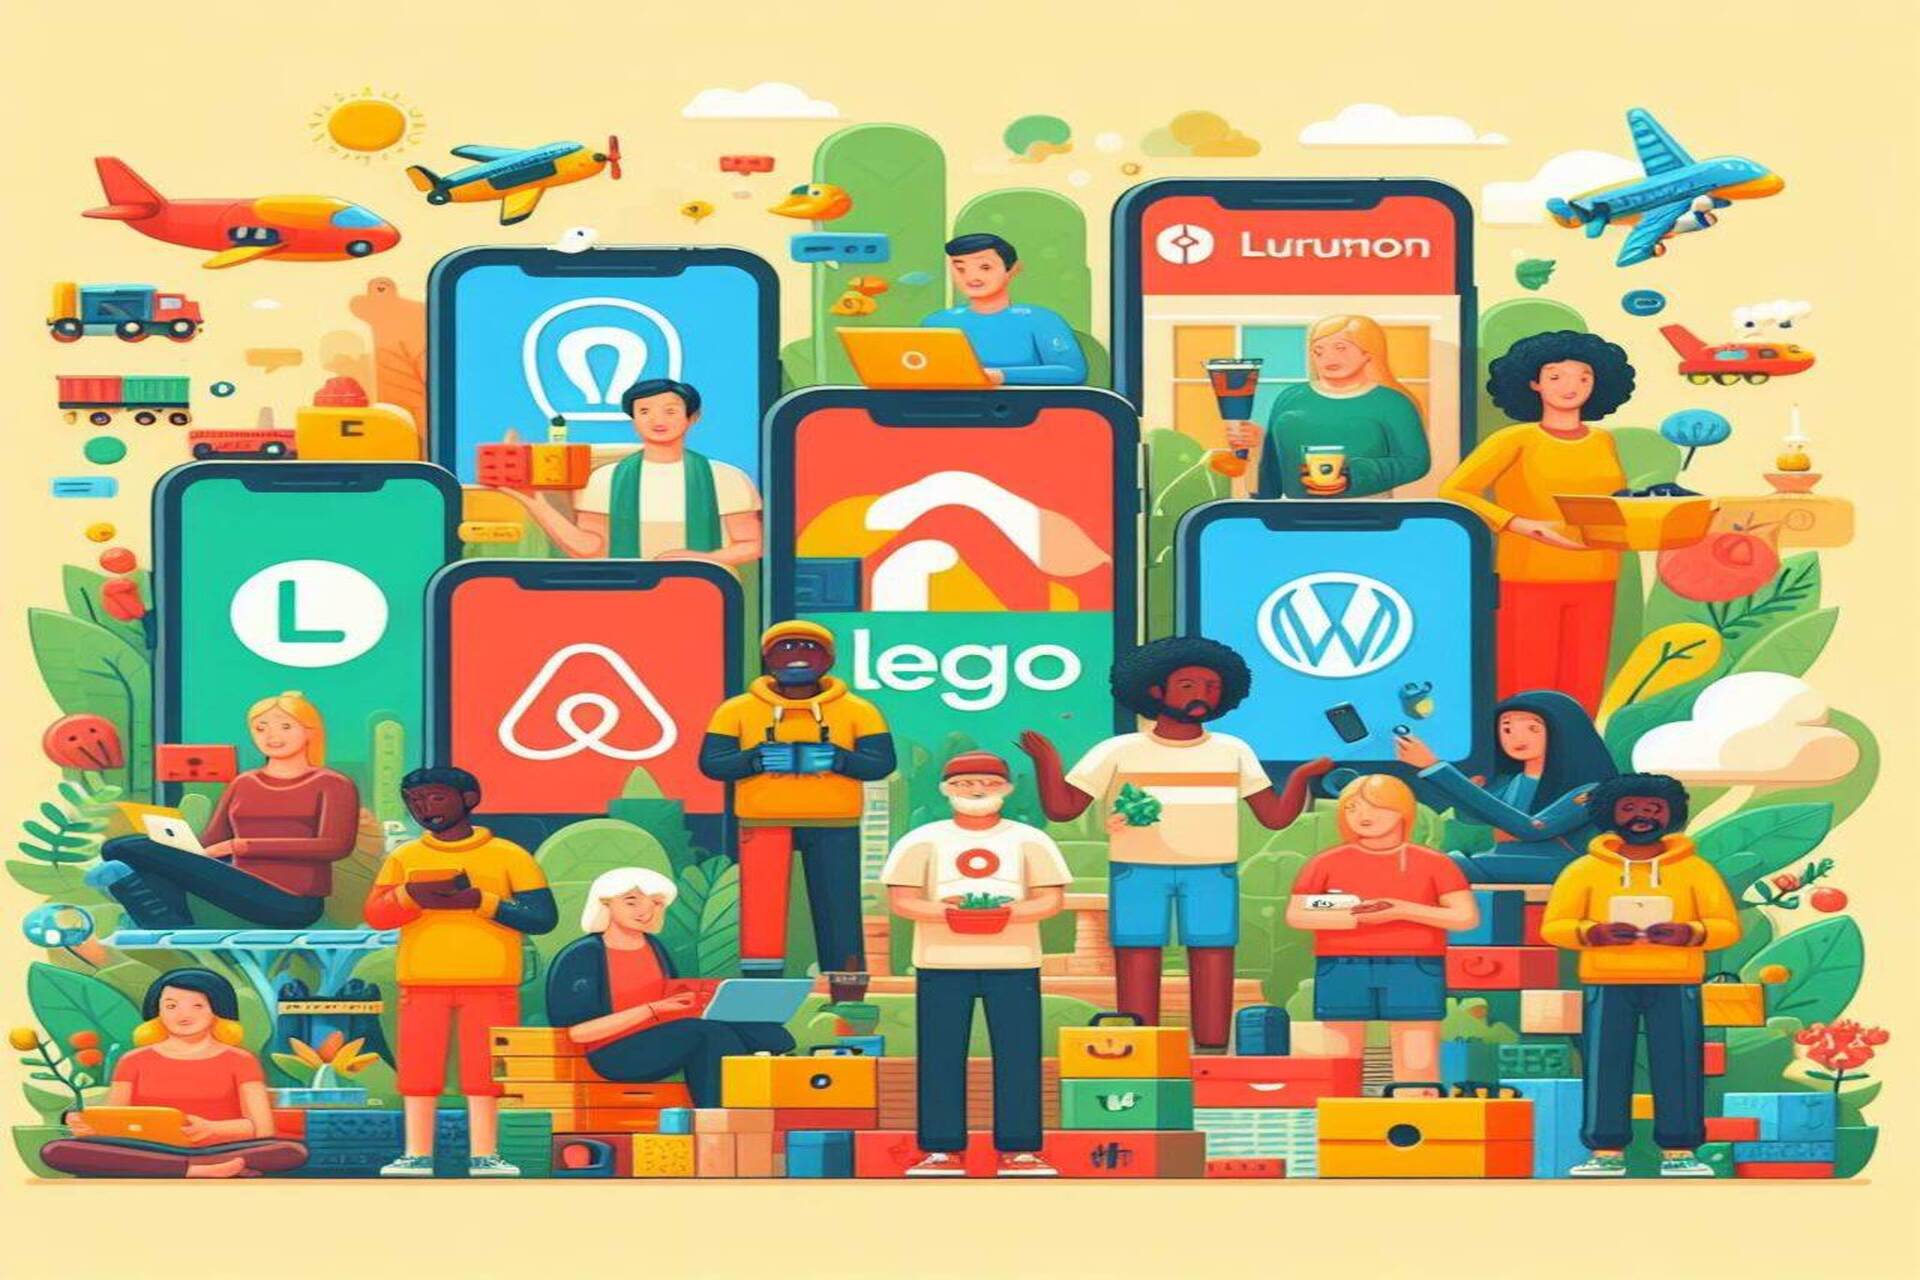 Kogukond ja rahvahulk: Airbnb, Etsy, GitHub, Stack Overflow, Lego Ideas, WordPress, Linux ja Lululemon on suurepärased näited kogukonnarakendustest